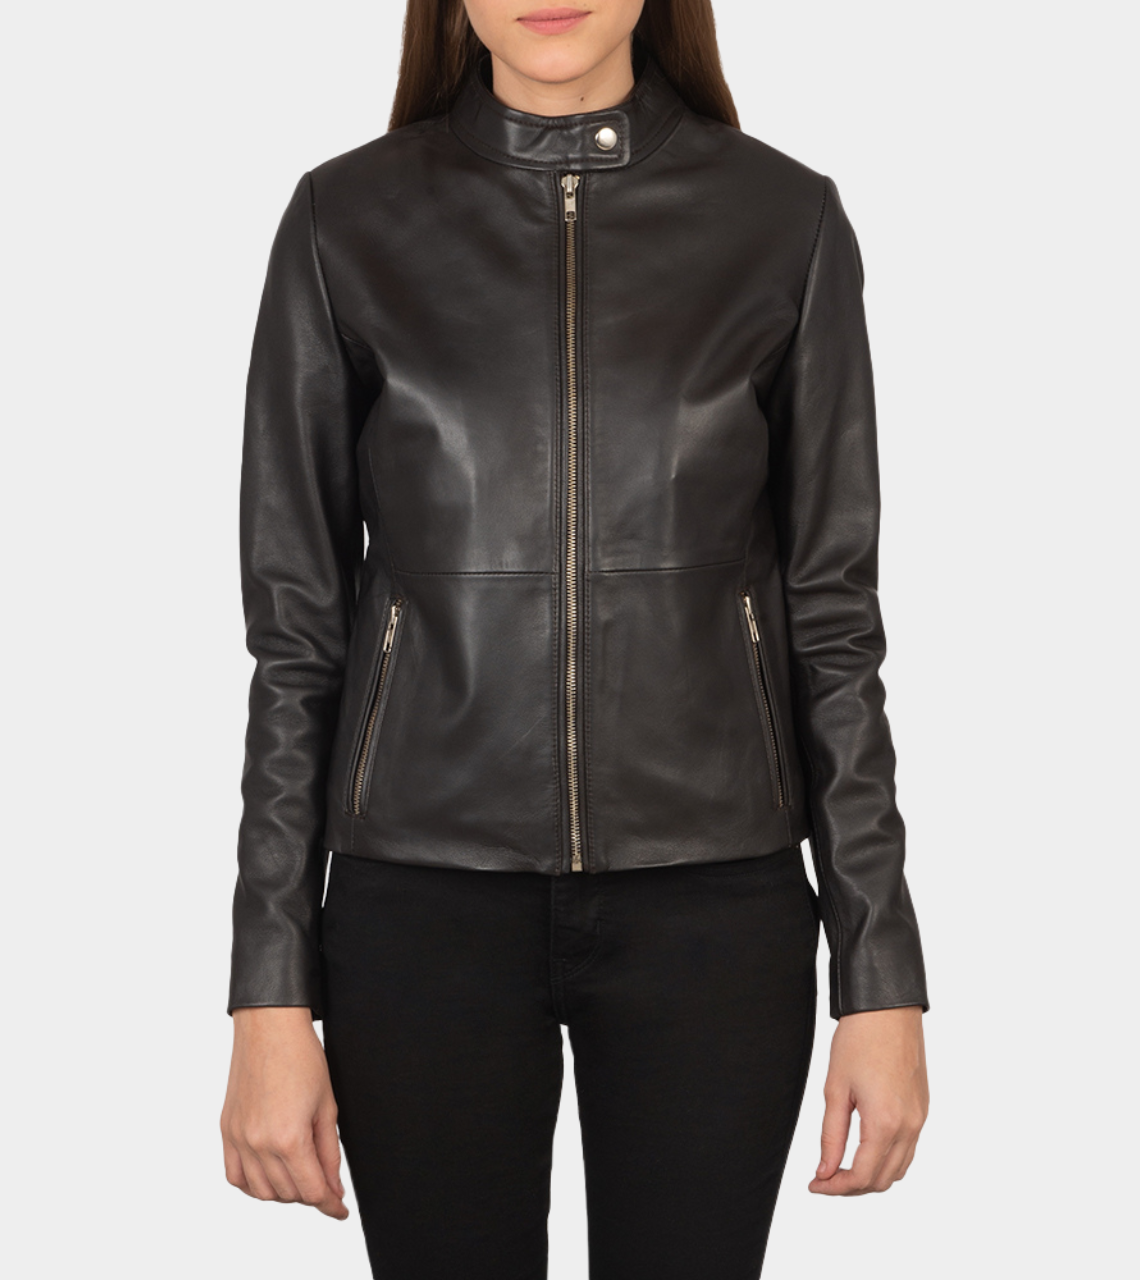 Rocher Women's Biker Leather Jacket